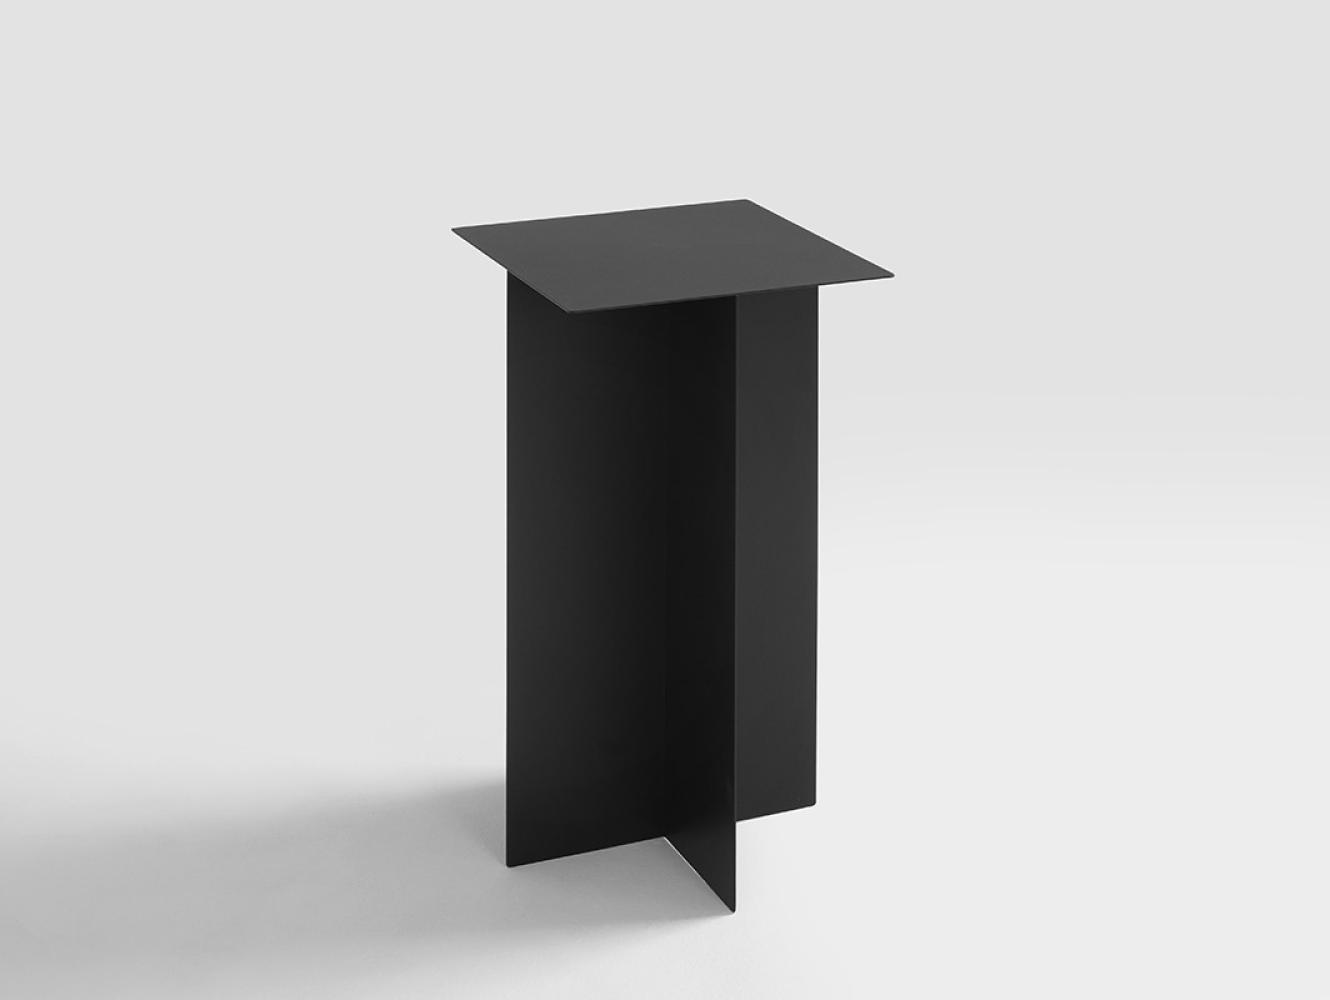 Furnilovers Beistelltisch OLI METAL, schwarz, 30x30 cm Bild 1